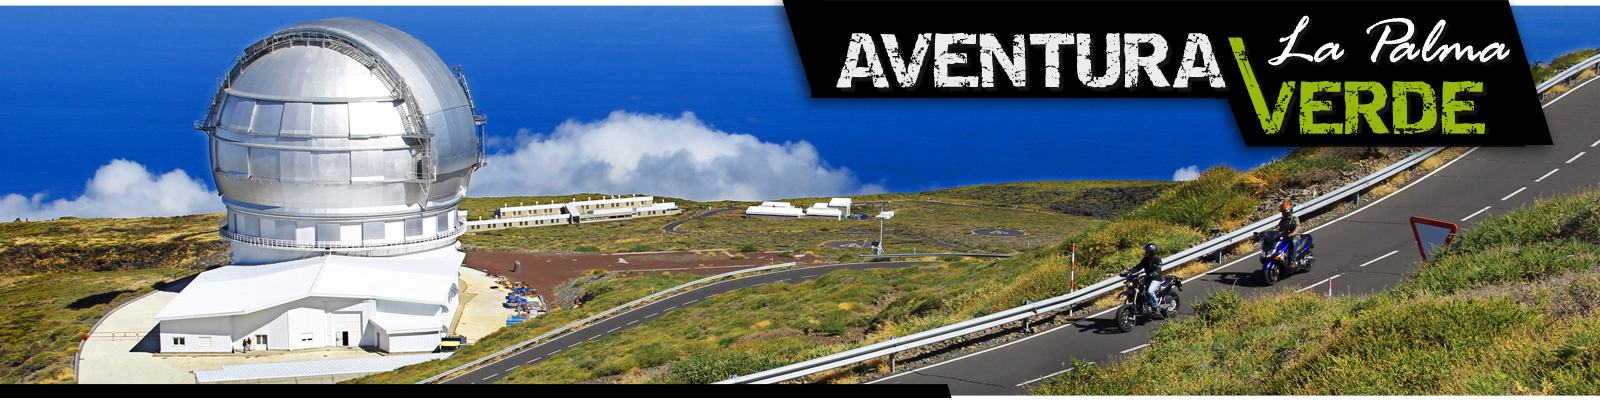 Aventura Verde - La Palma - Motorradvermietung